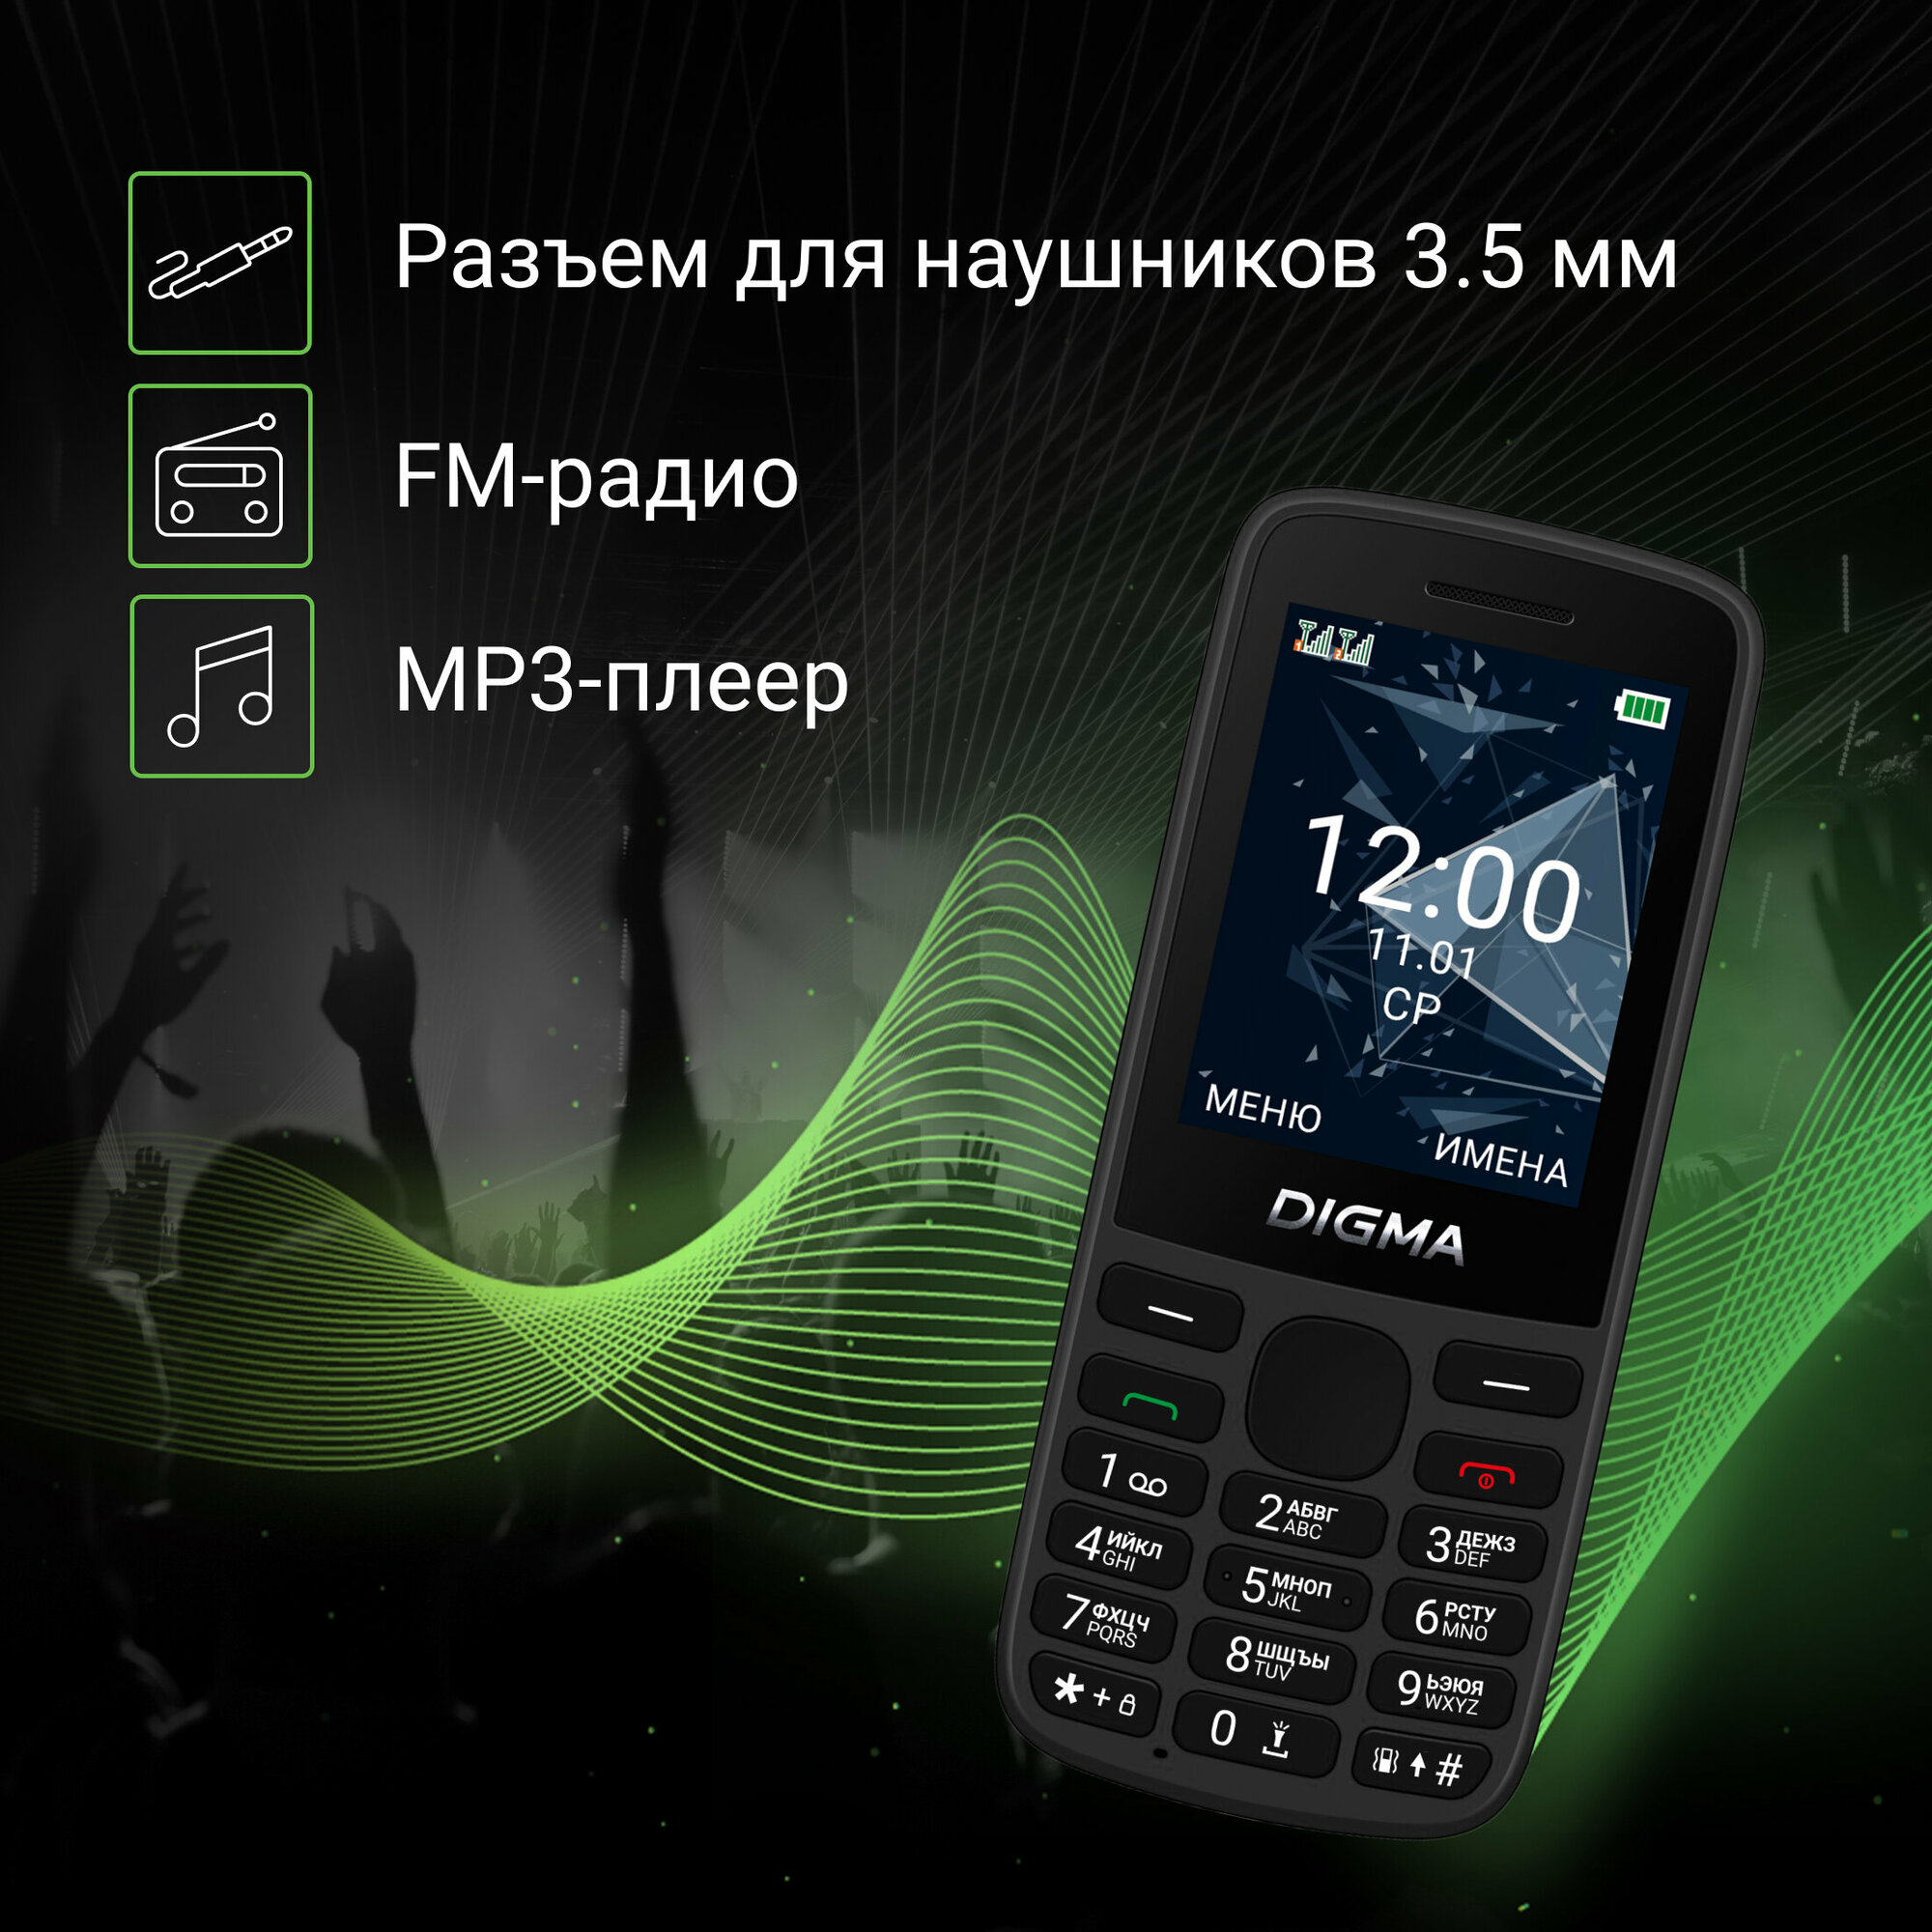 Мобильный телефон Digma 1888900 Linx 32Mb 32Mb черный моноблок 2Sim 2.4" 240x320 GSM900/1800 GSM1900 - фото №11